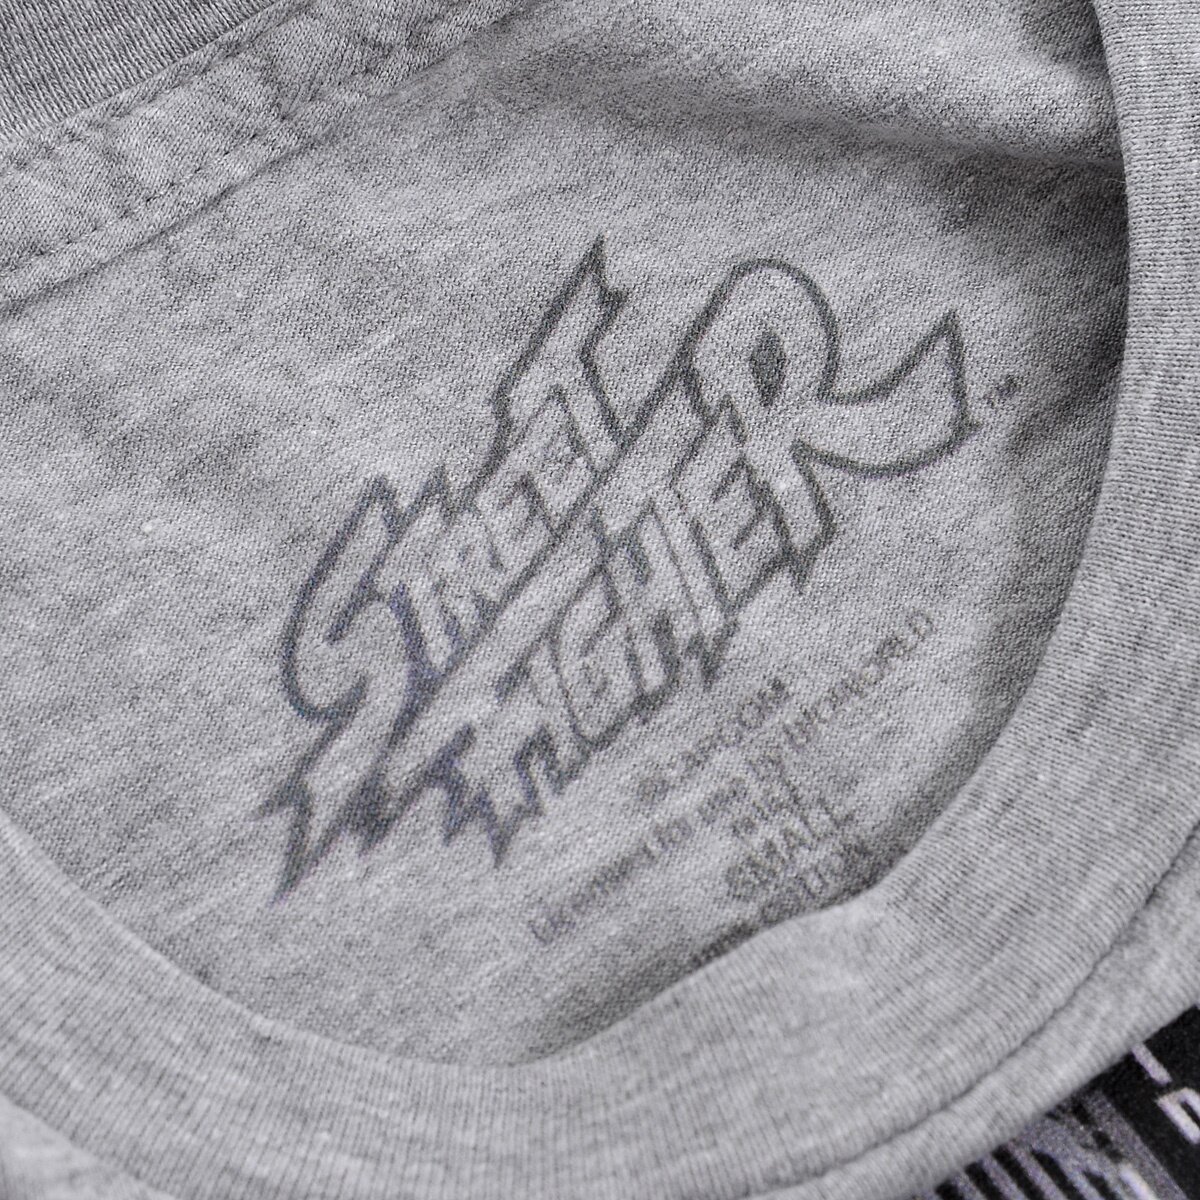 Street fighter World Warrior T shirt - Sf2 - T-Shirt